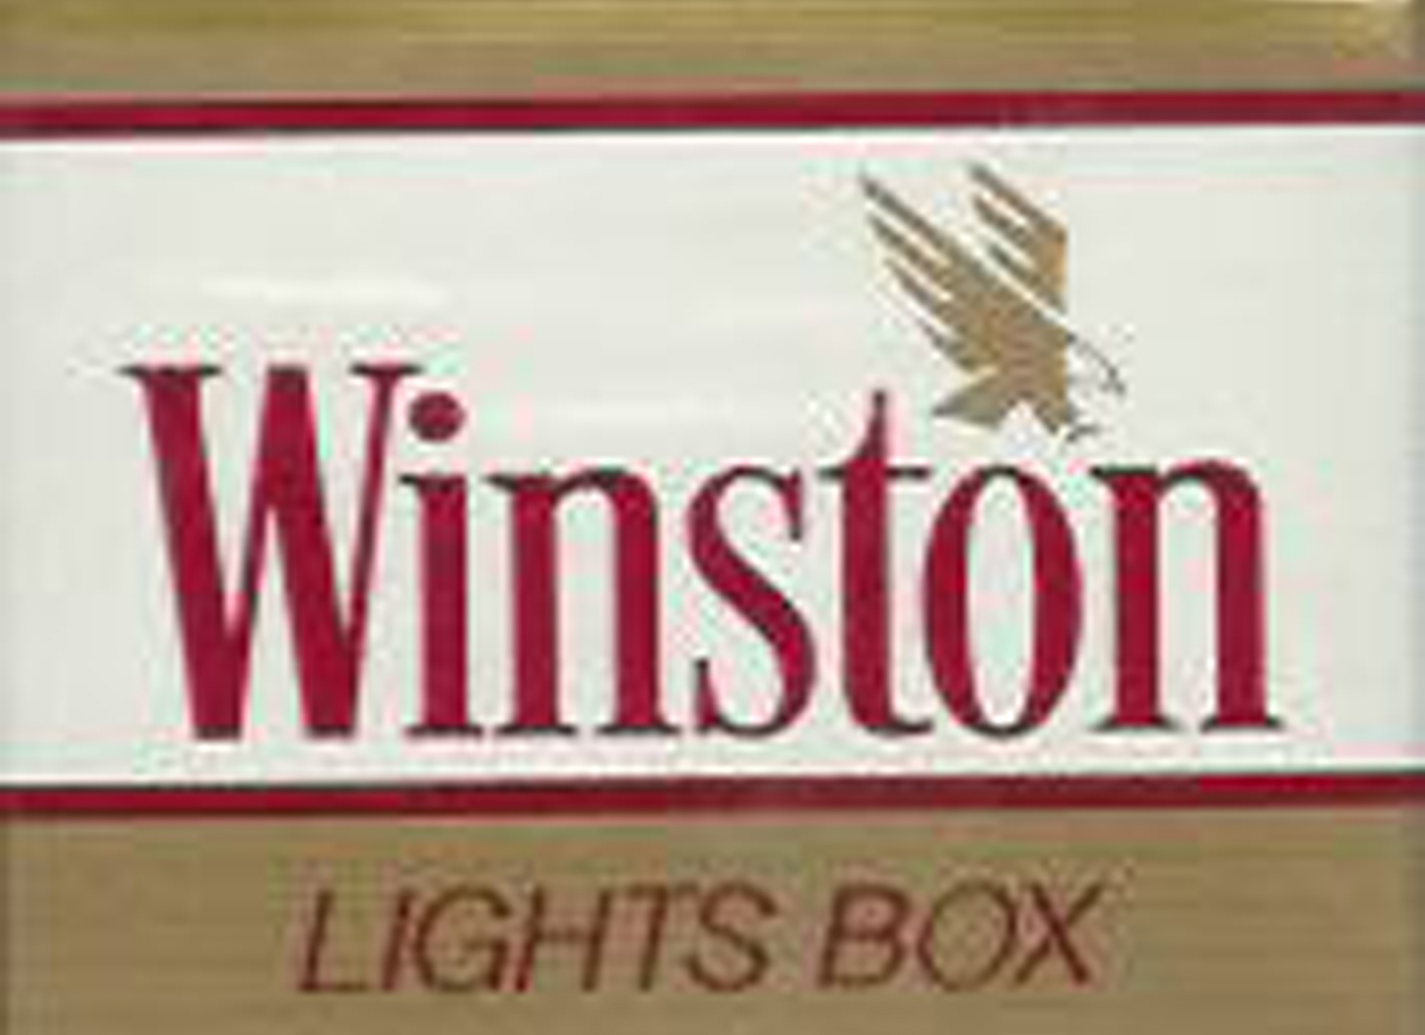 Winston Cigarettes Eagle used for the Santiago Chile Mormon Church